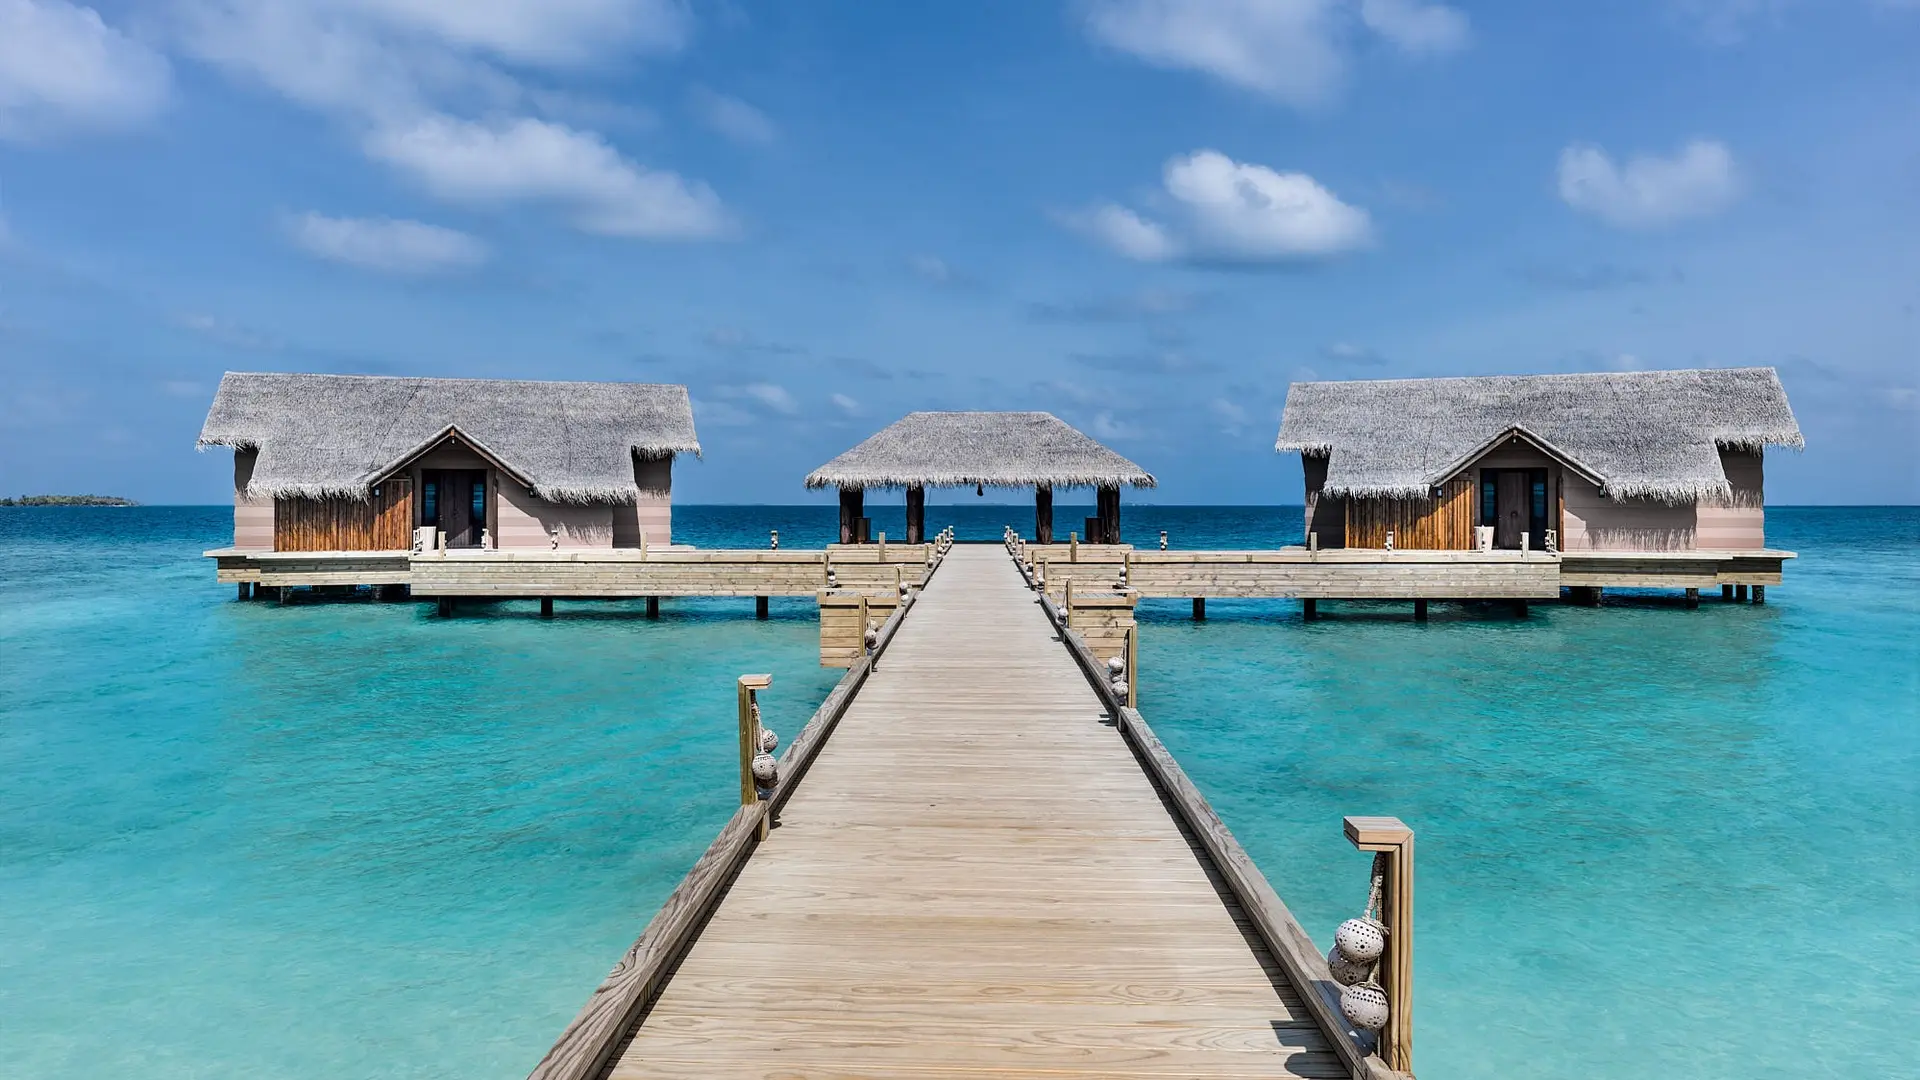 Hotel review Service & Facilities' - JOALI Maldives - 3